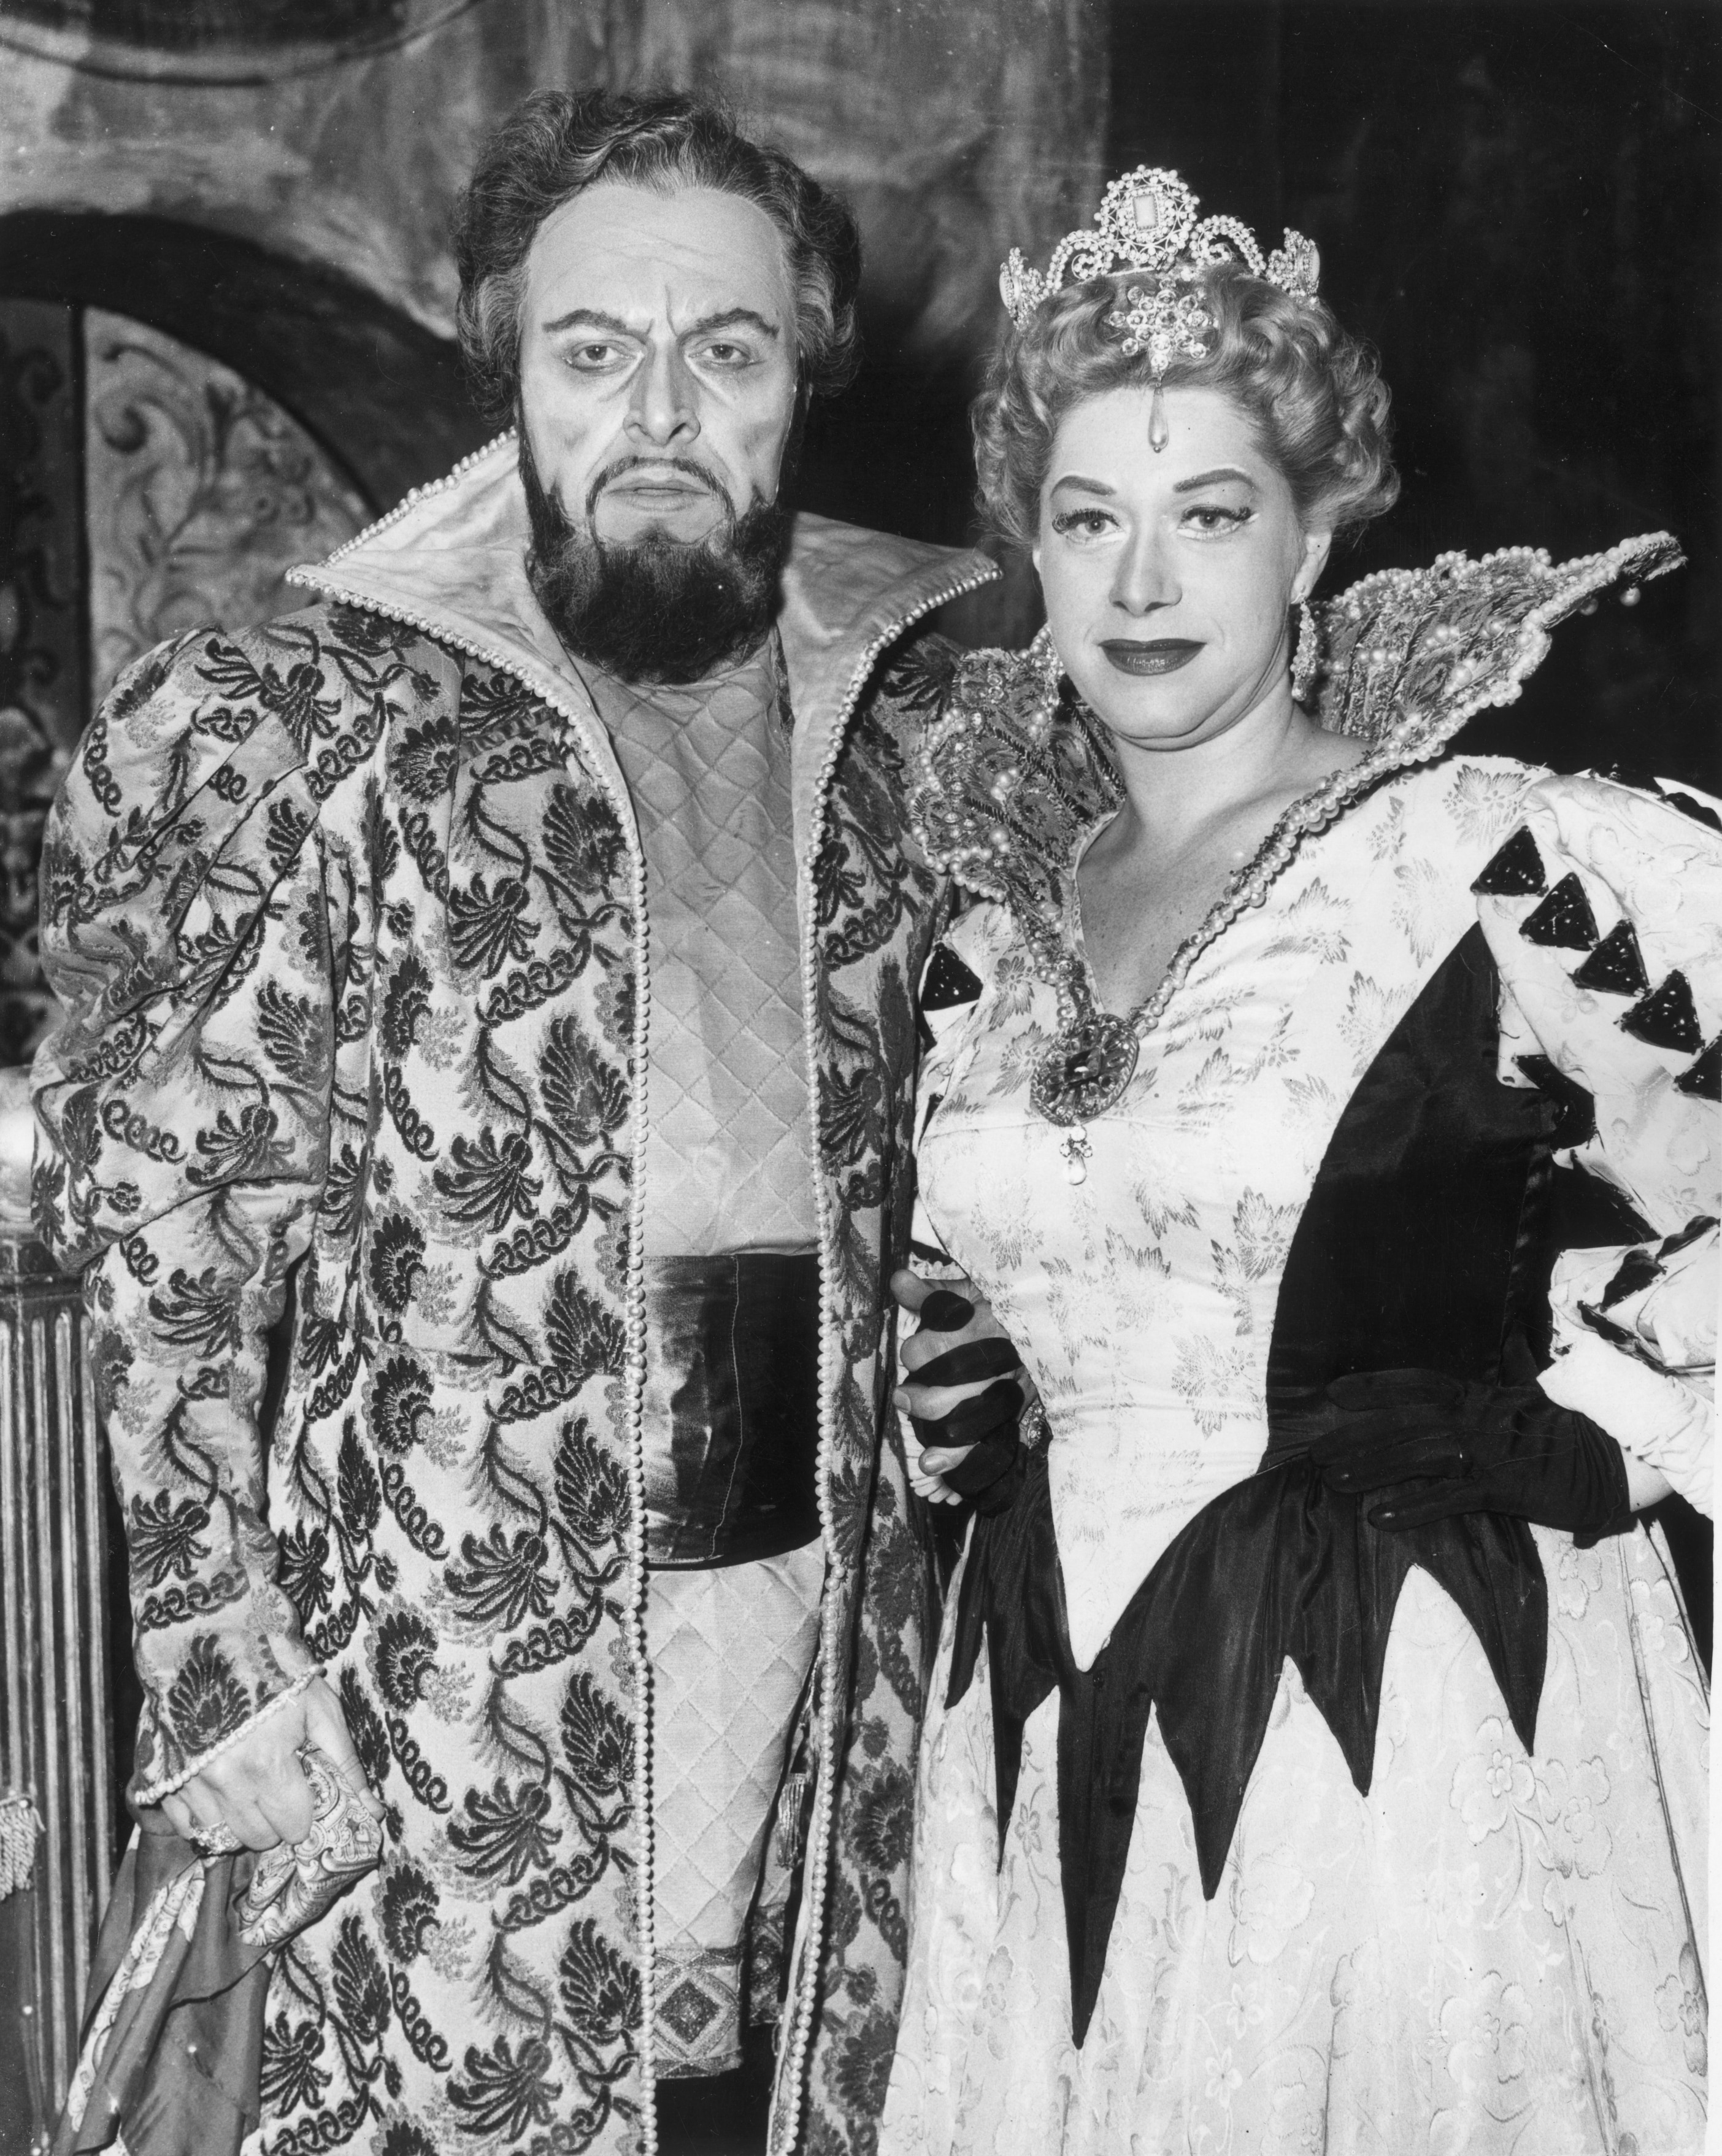 Boris Christoff (1914-1993), basso-baritono bulgaro nei panni di Boris Godunov, e Regina Resnik (1922-2013), soprano statunitense nel ruolo della principessa polacca Marina, durante le prove. Royal Opera House al Covent Garden di Londra, 1958.